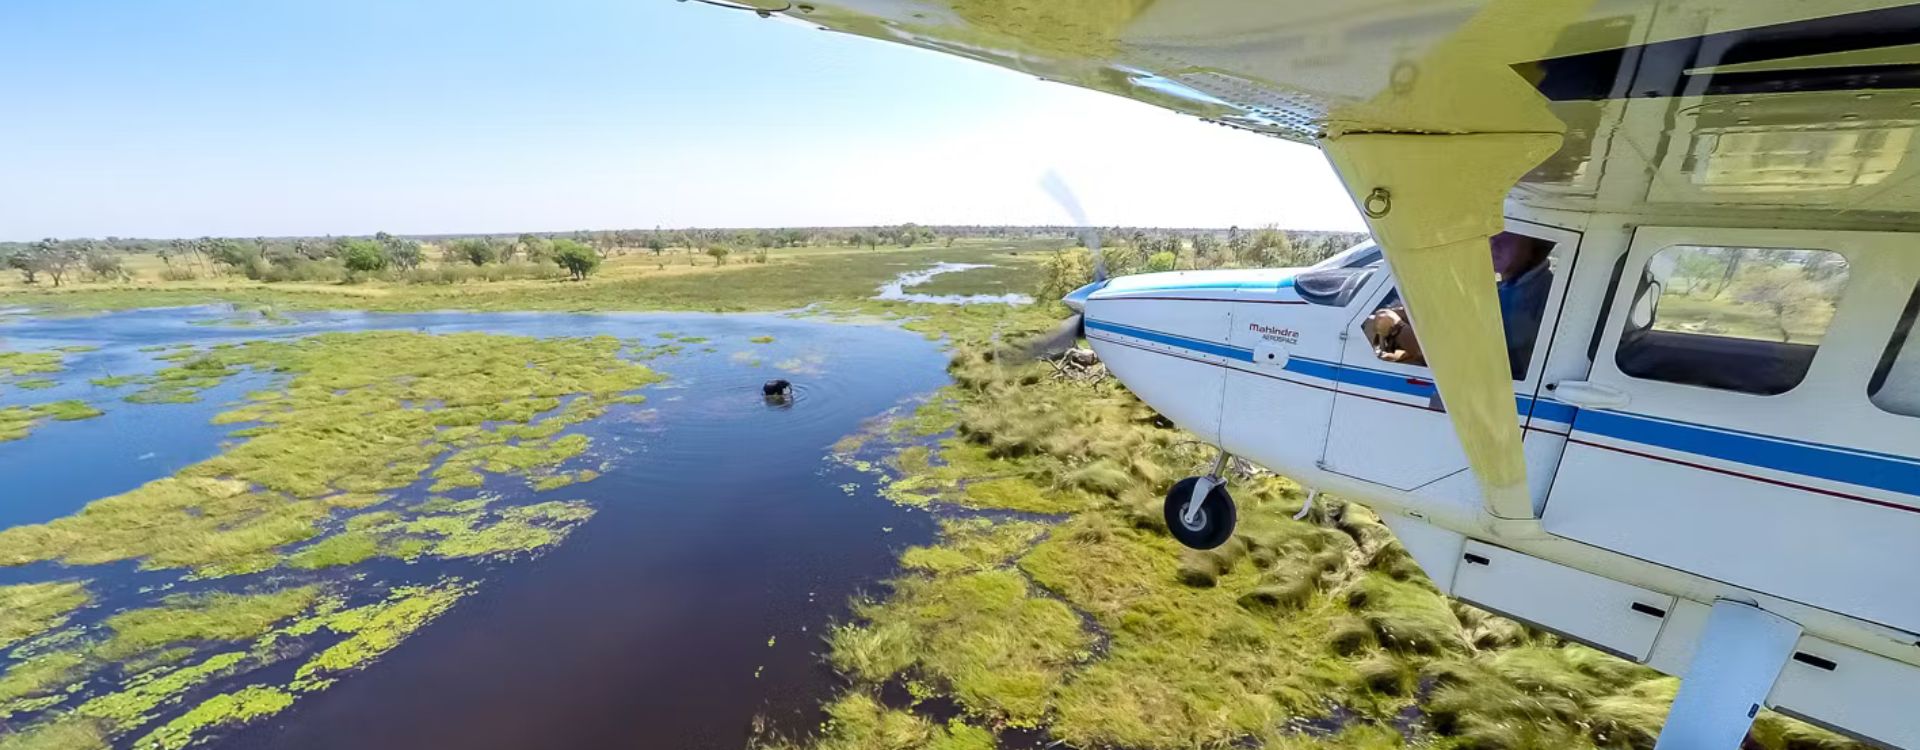 Okavango Delta Airport And Flights